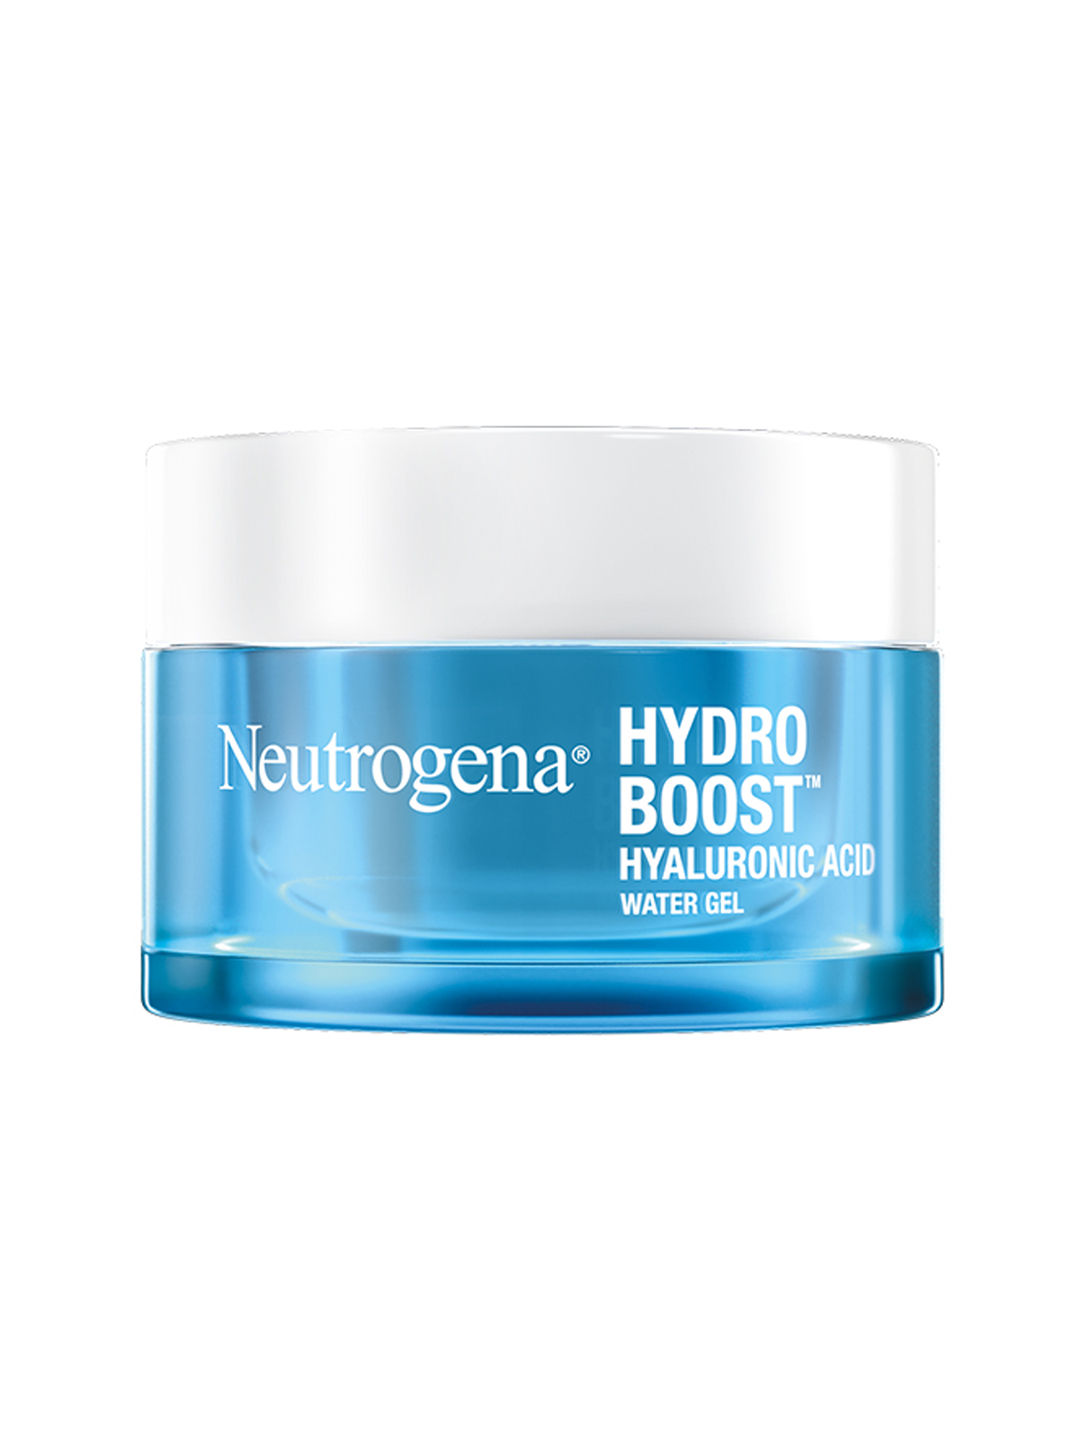 Buy Neutrogena Hydro Boost Water Gel (50 ml) - Purplle